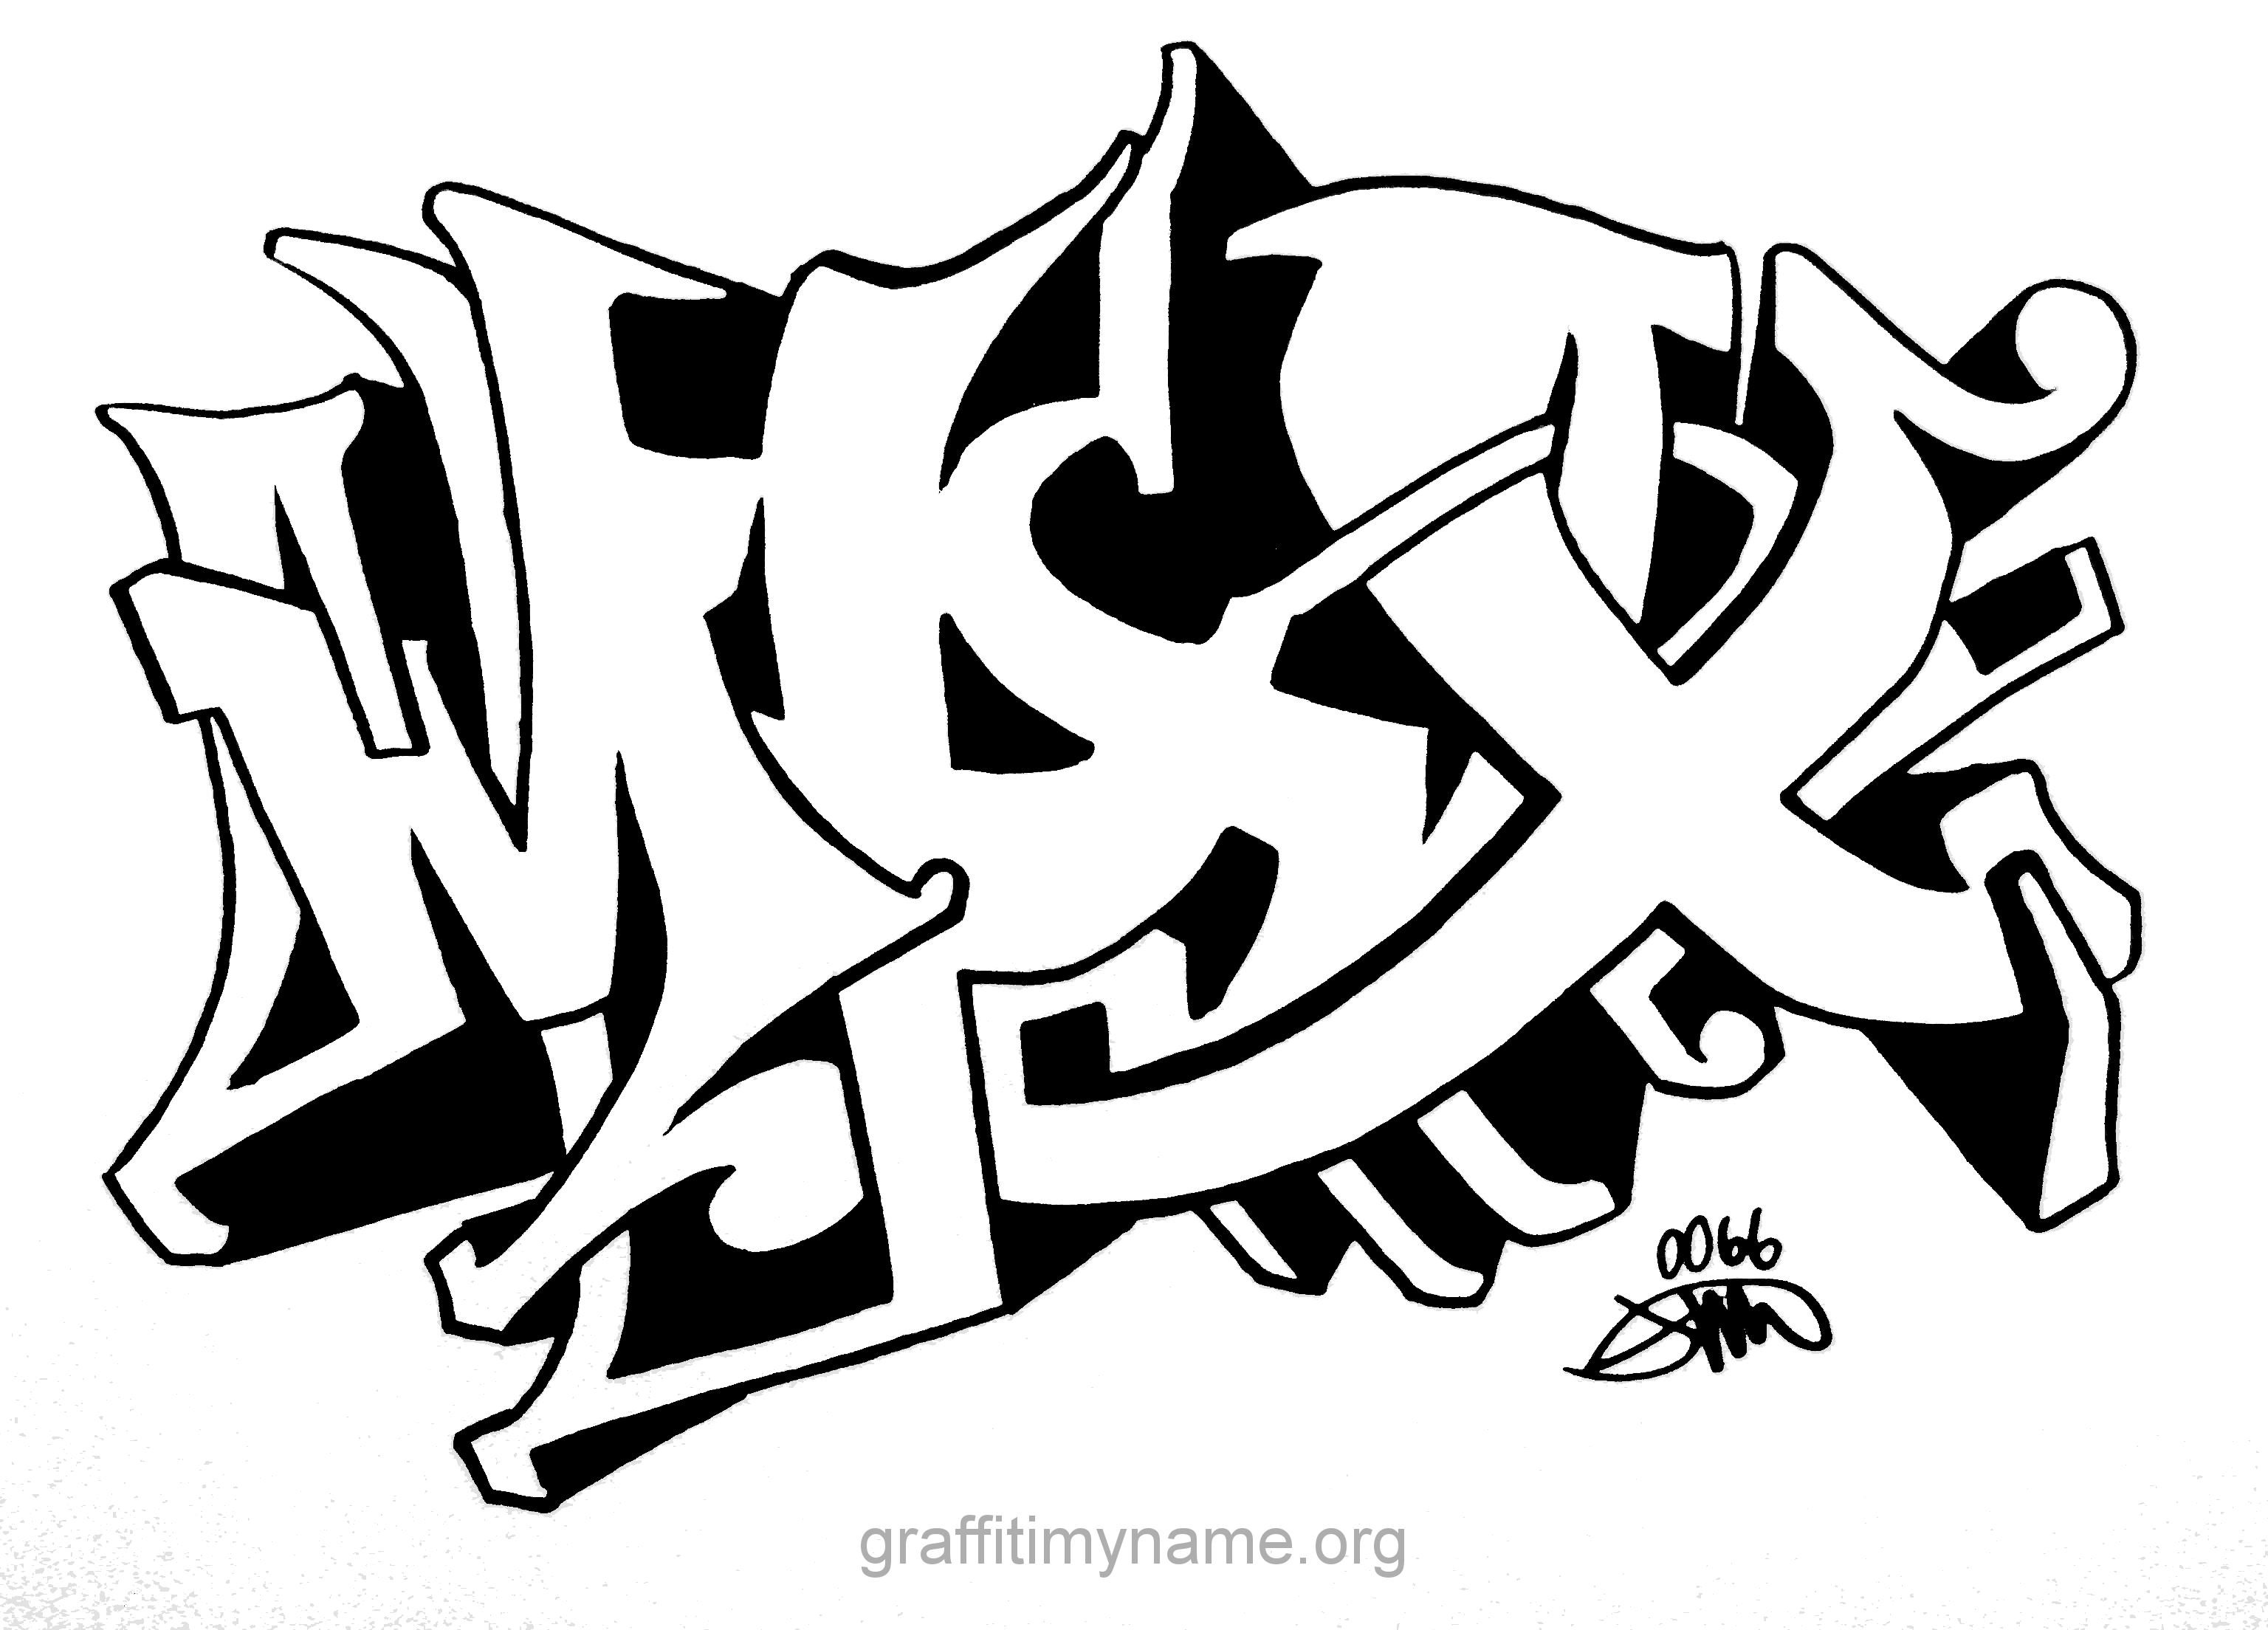 max - Graffiti My Name